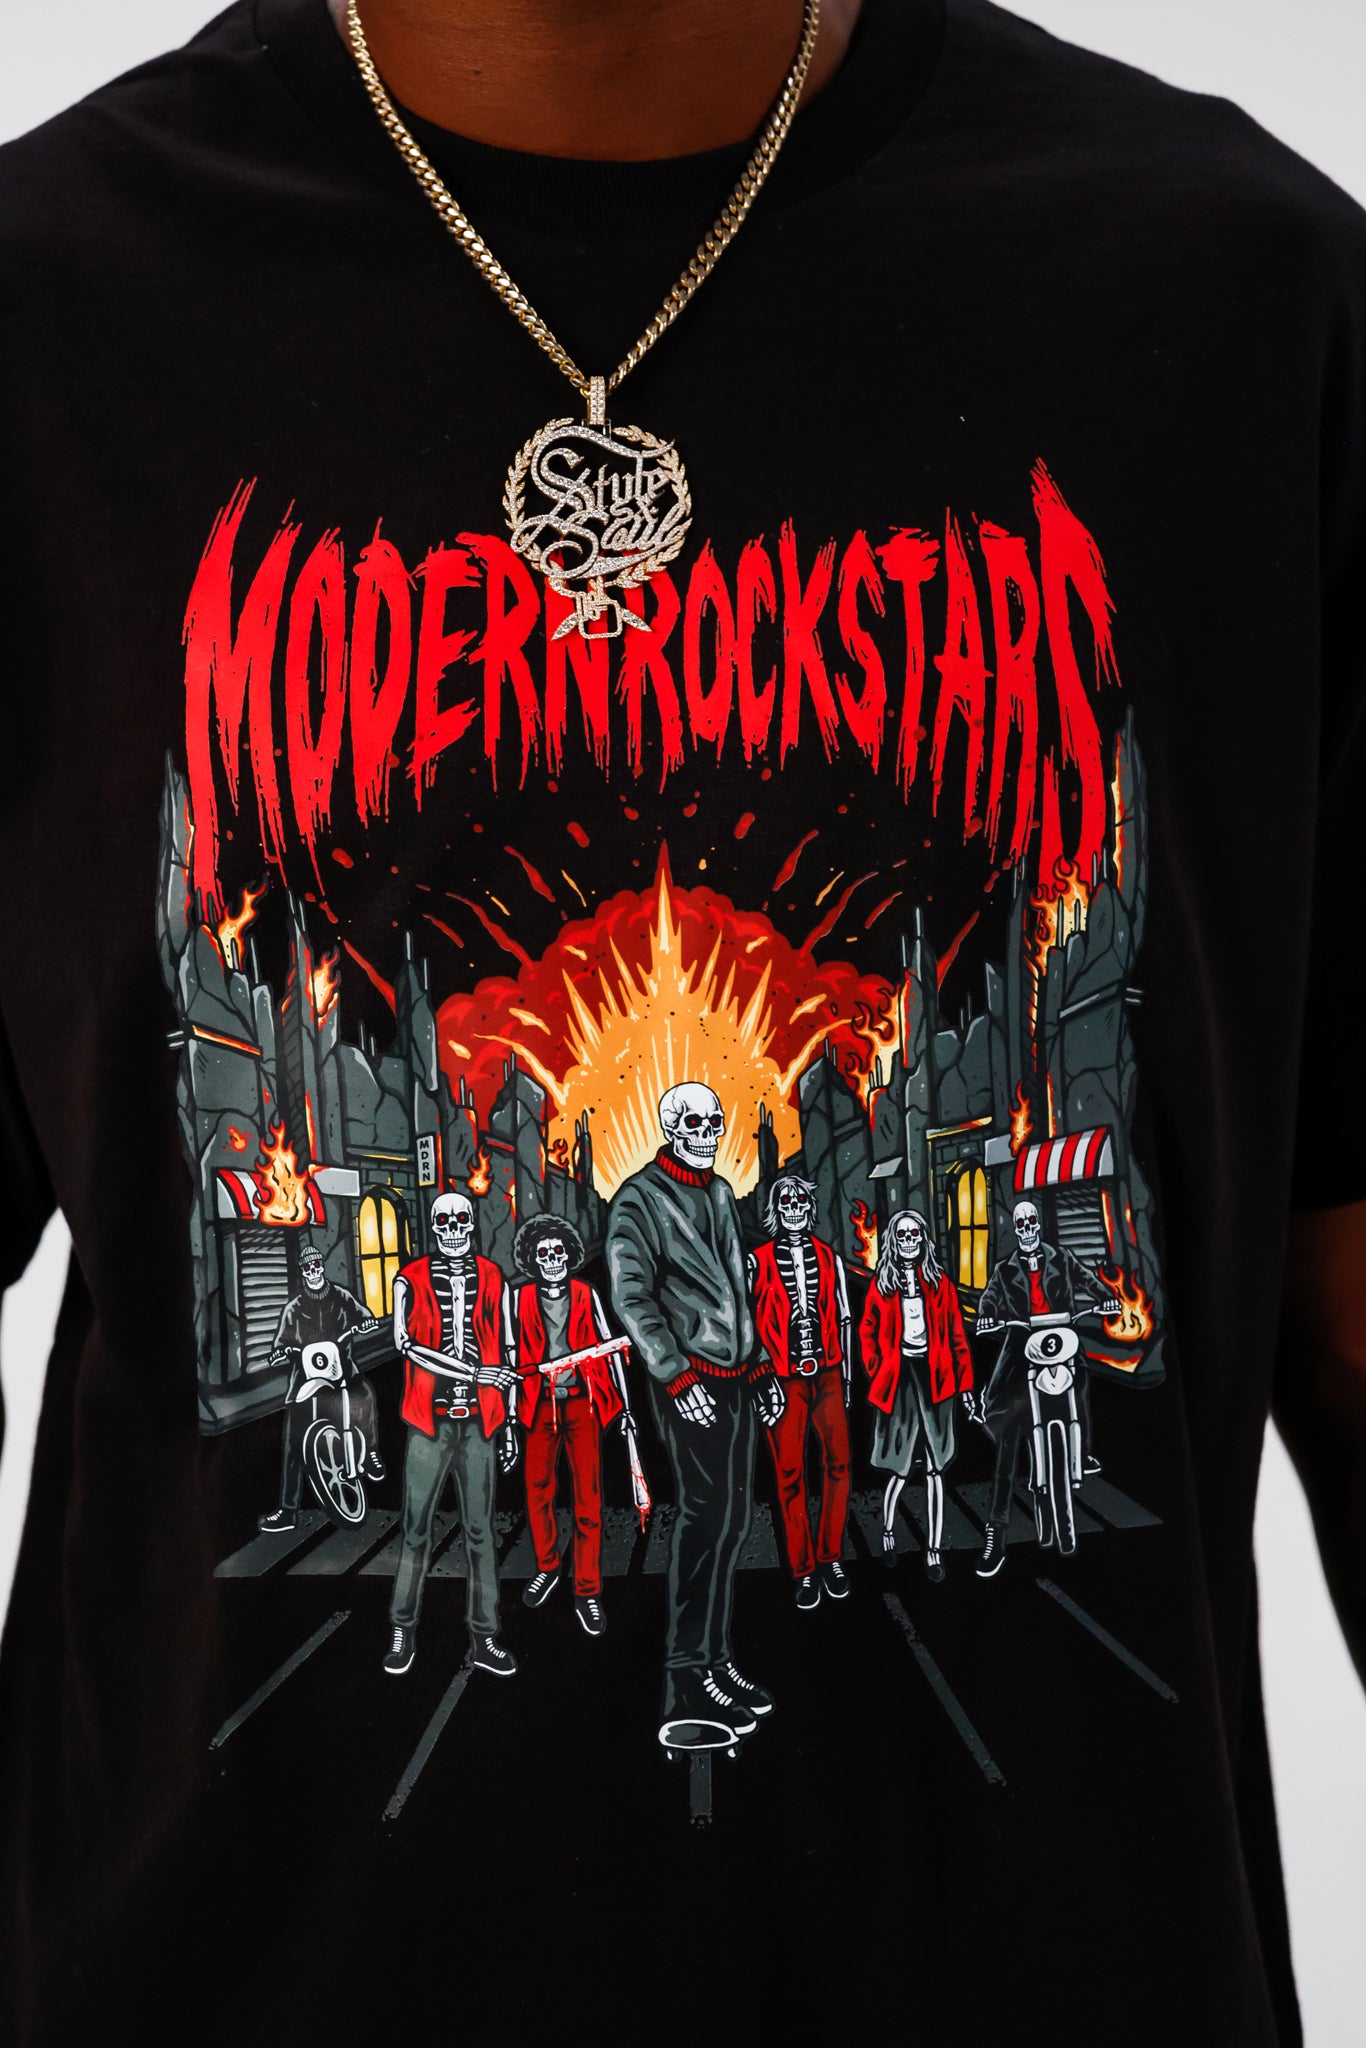 THE ROCKSTARS PURGE T-Shirt - Modern Rockstars